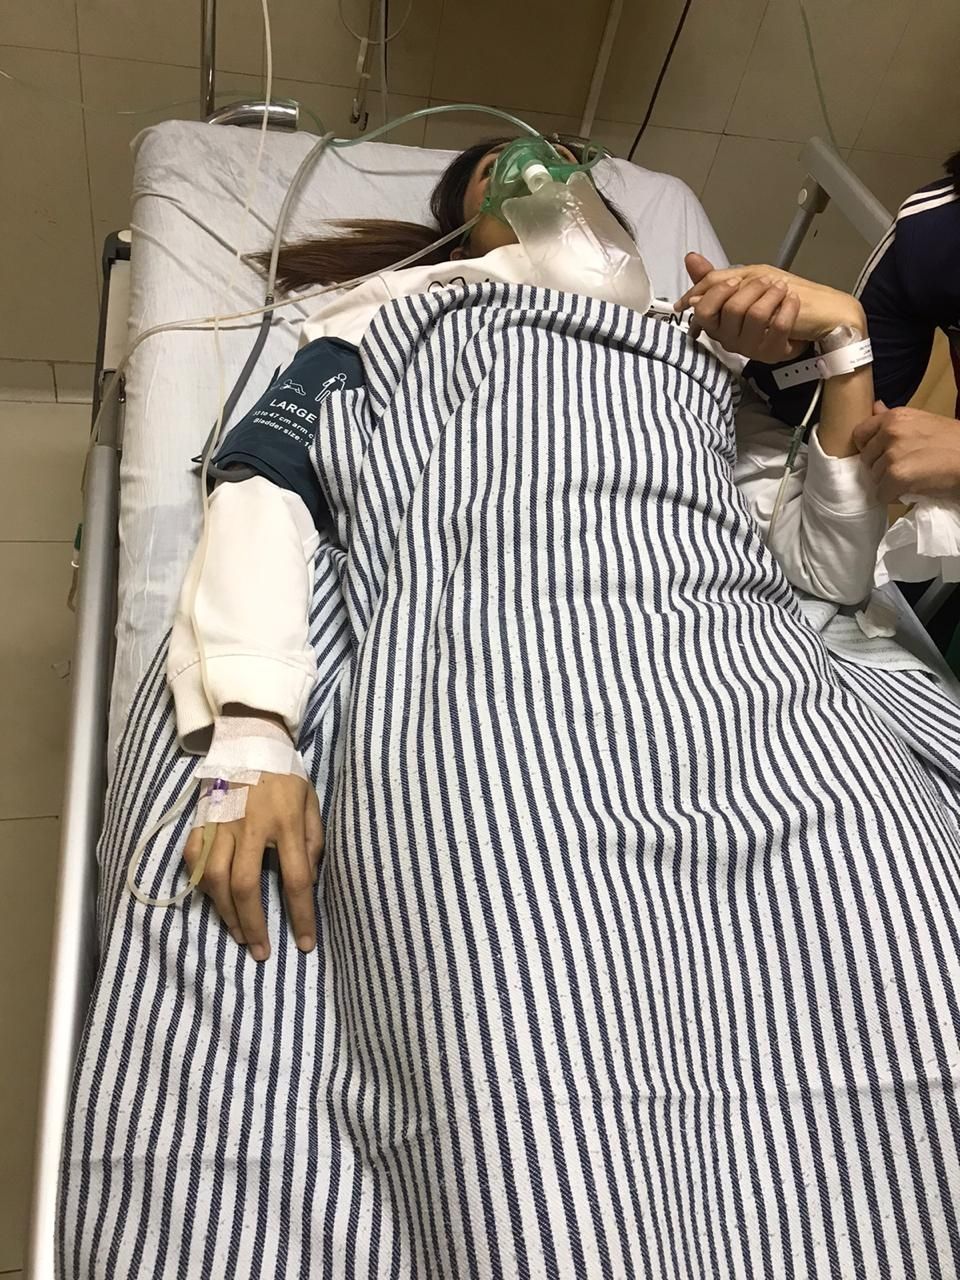 Aida Saskia saat dirawat di rumah sakit usai pingsan di dalam pesawat [dok.pribadi]